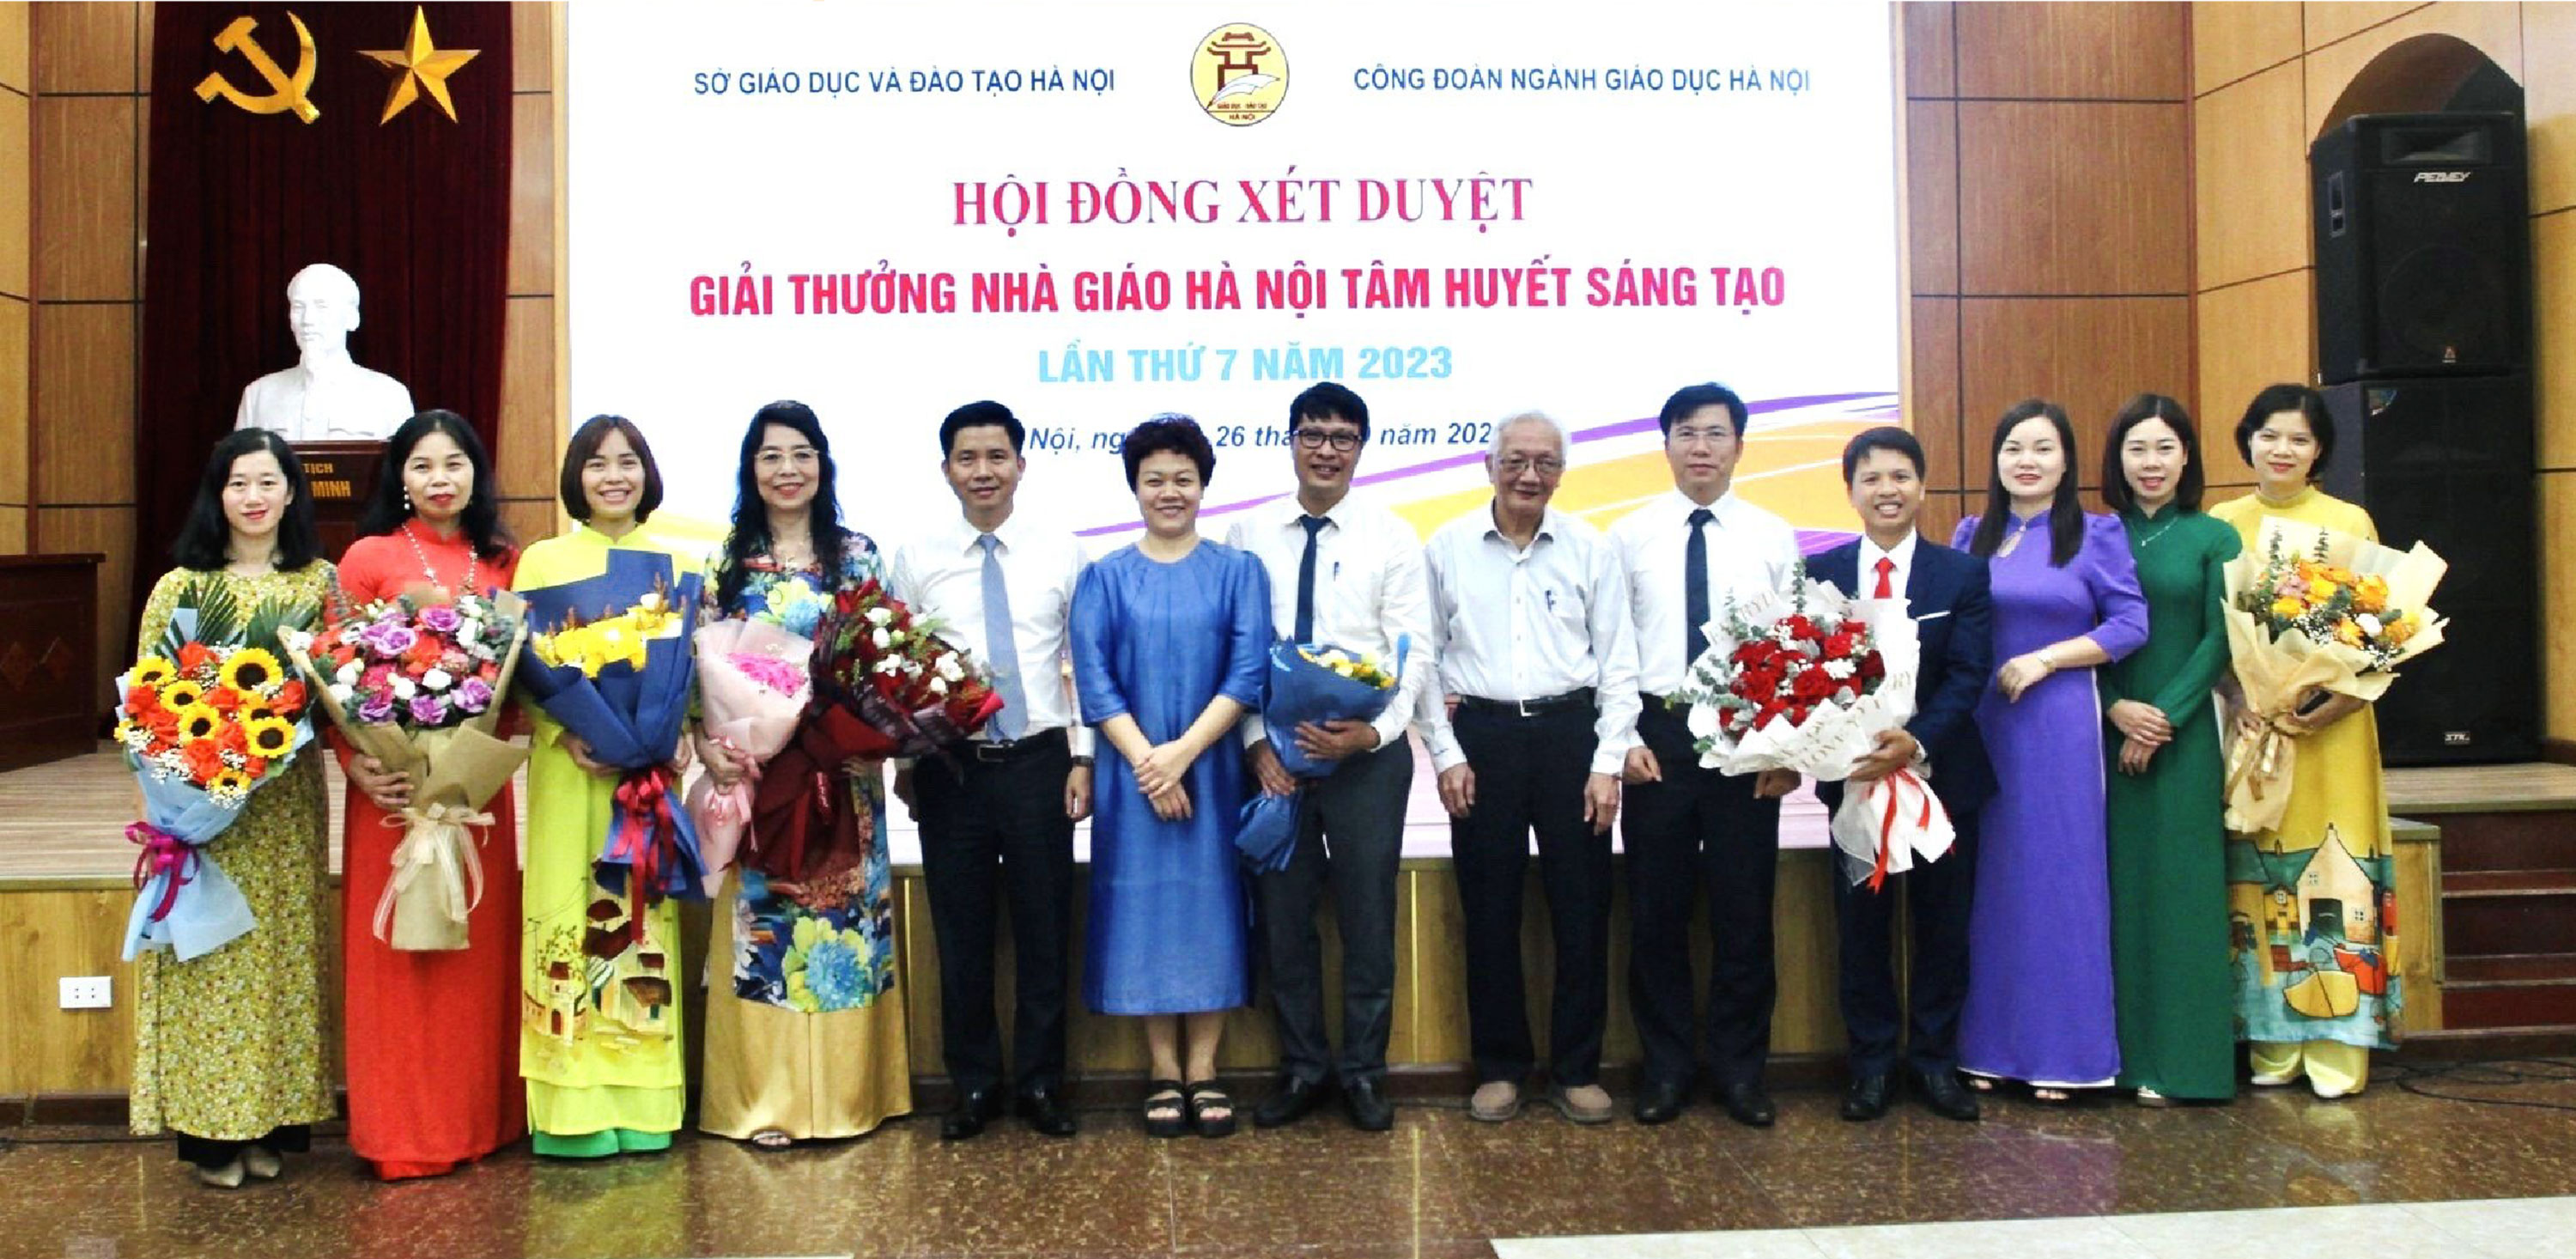 Chuyện về nhà giáo Hà Nội được giải thưởng Tâm huyết, sáng tạo năm 2023 - Ảnh 6